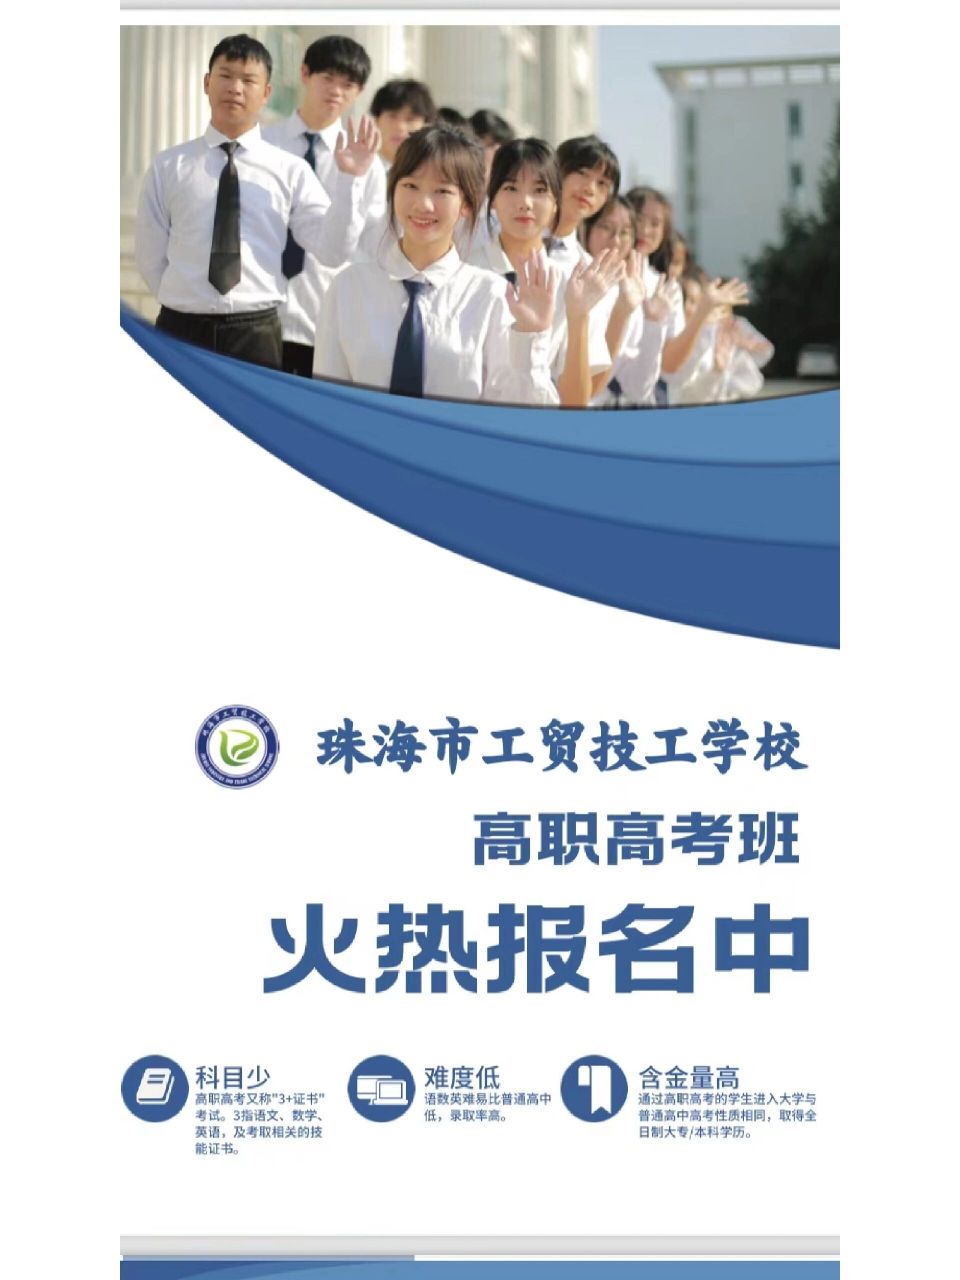 珠海新世纪学校宣传片图片